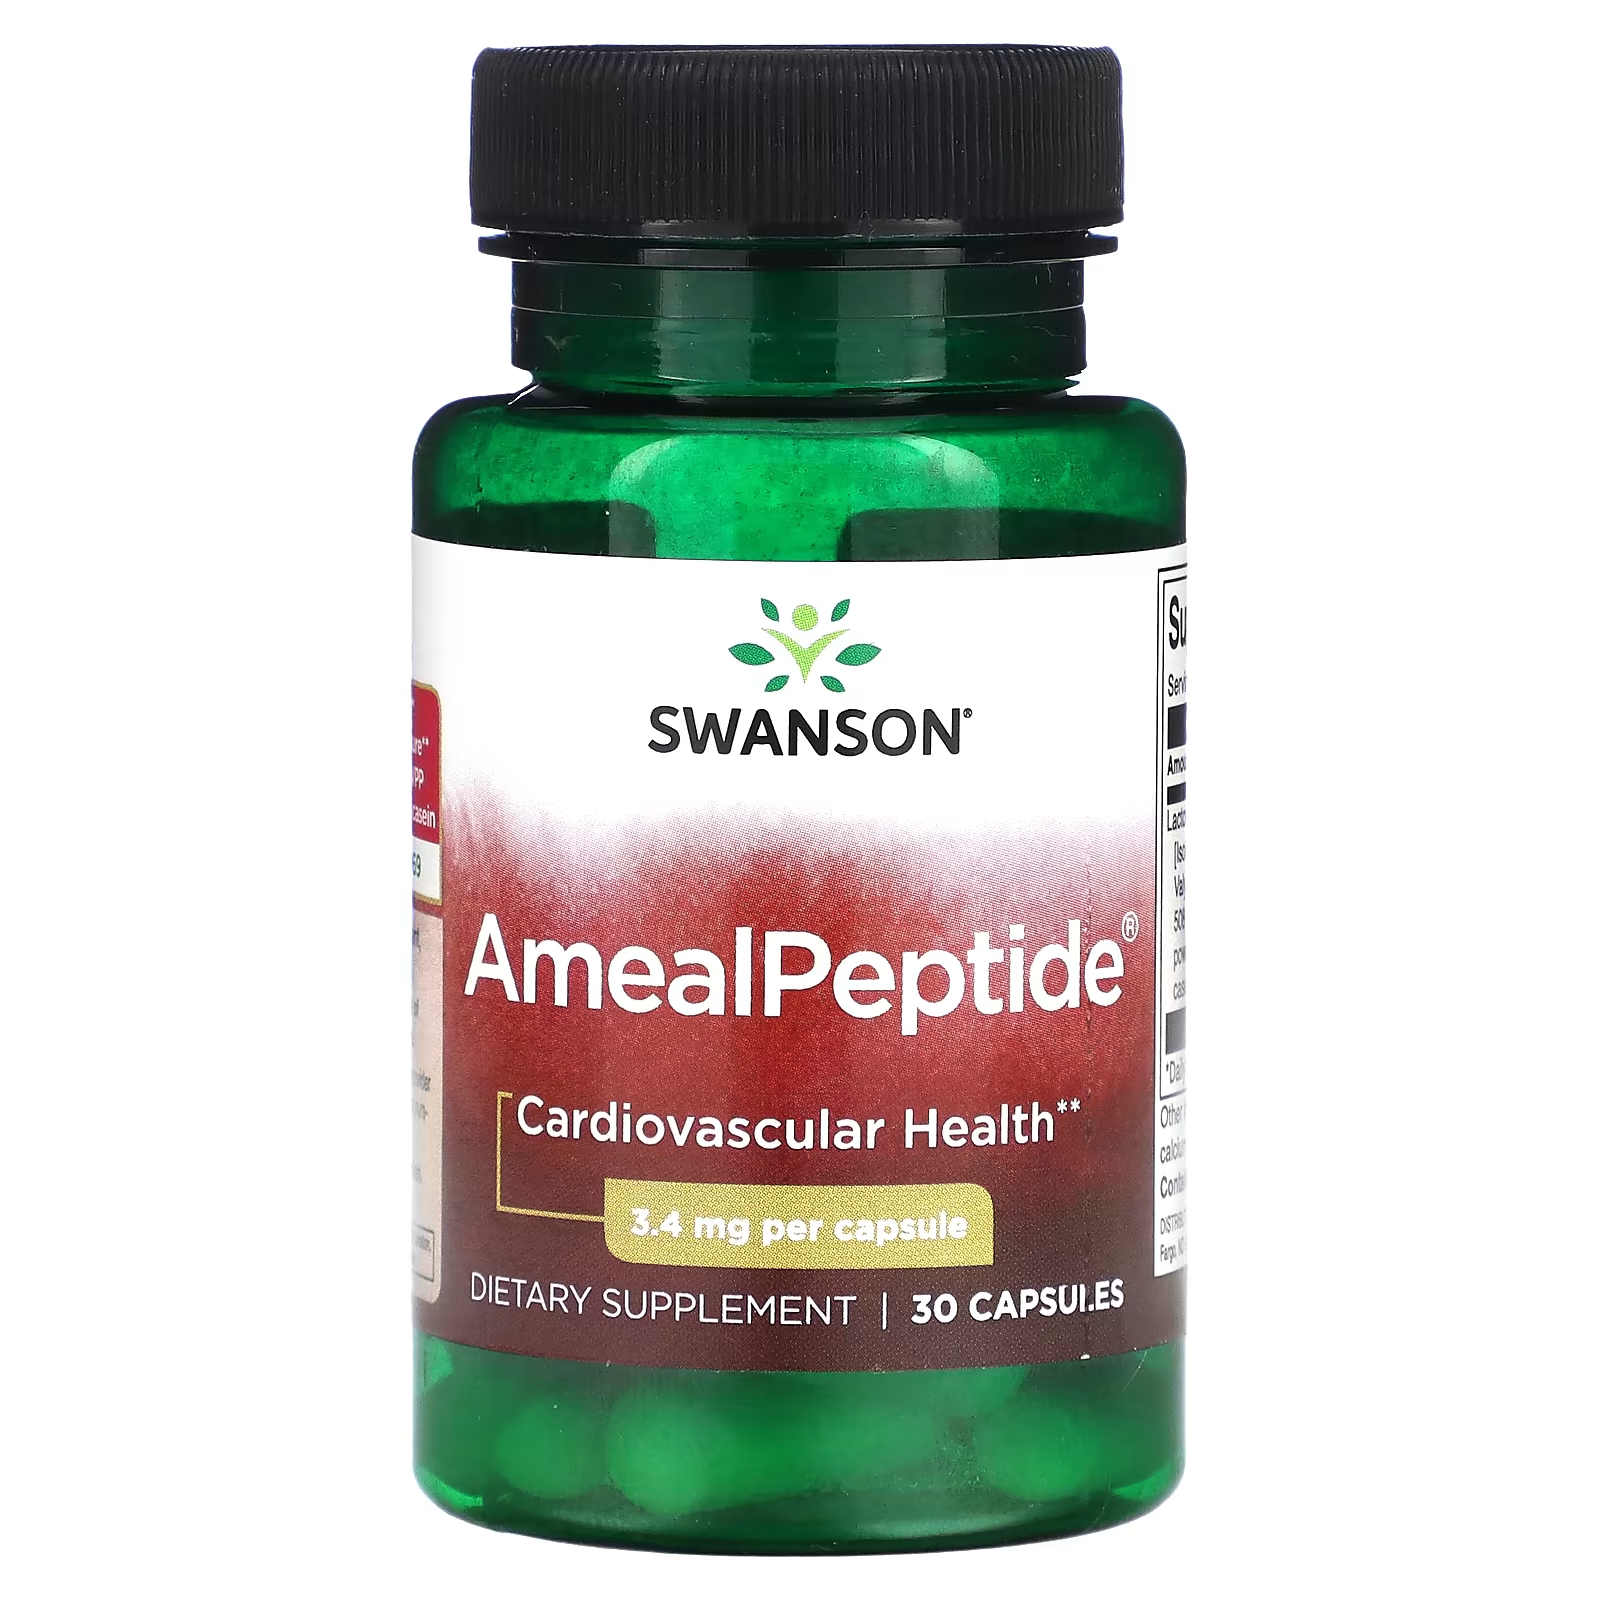 Пищевая добавка Swanson AmealPeptide 34 мг, 30 капсул пищевая добавка swanson l plantarum probiotic 30 капсул